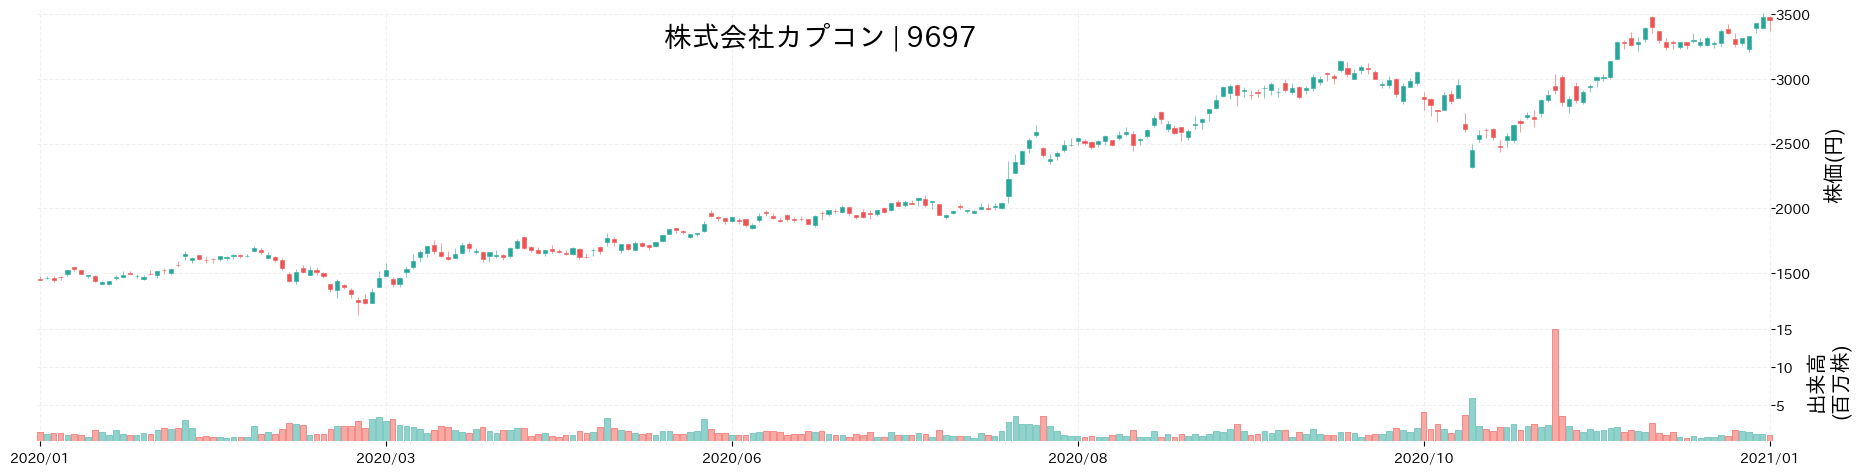 カプコンの株価推移(2020)